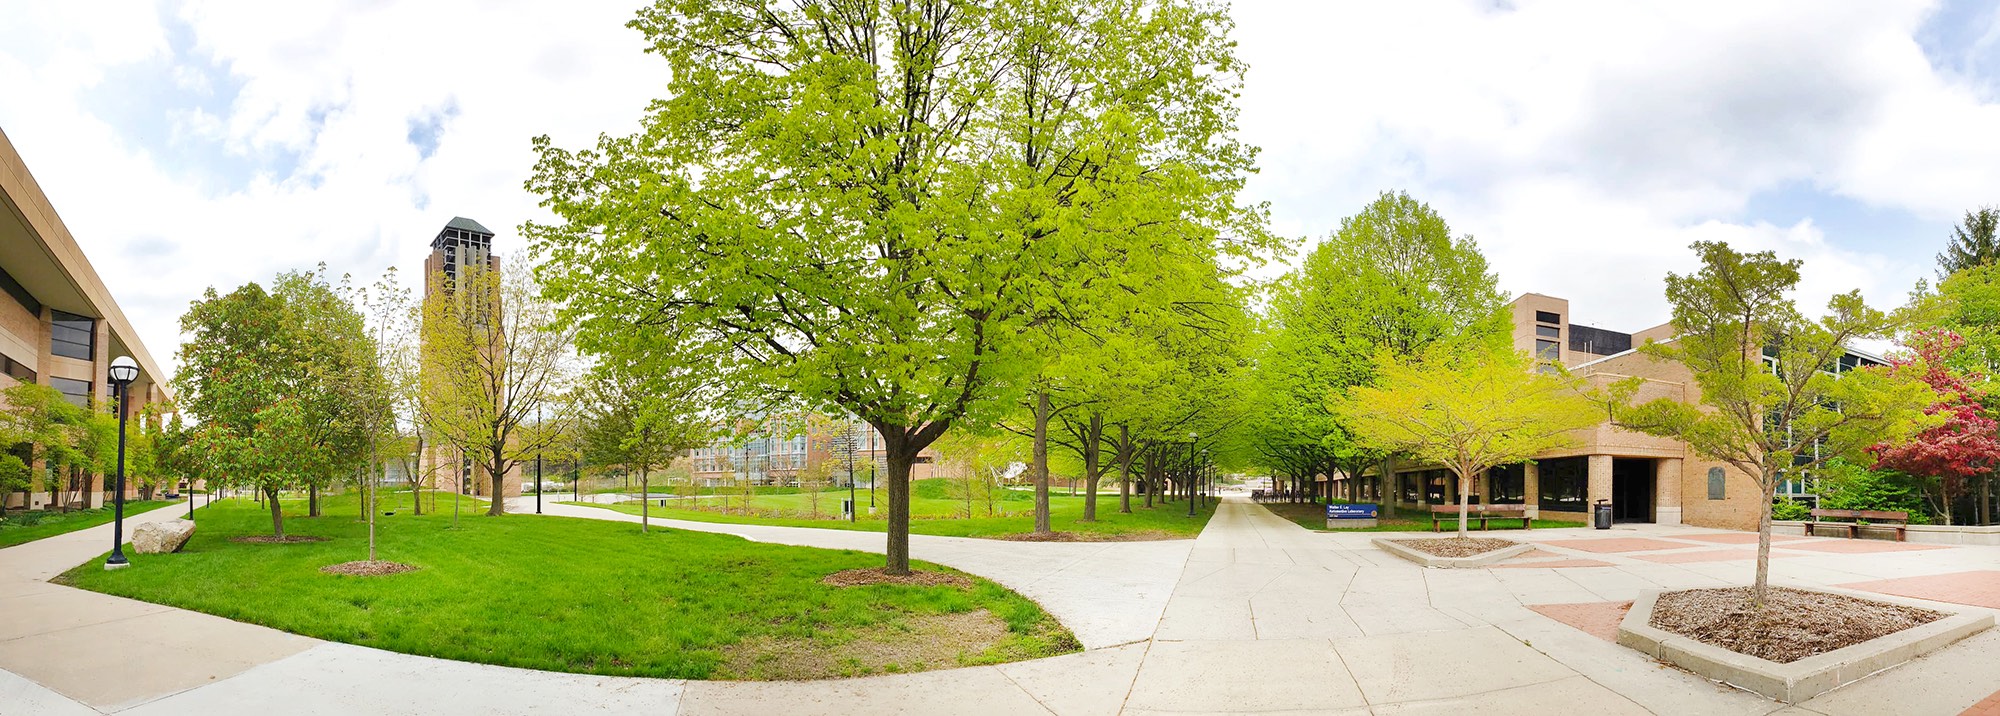 North Campus in spring